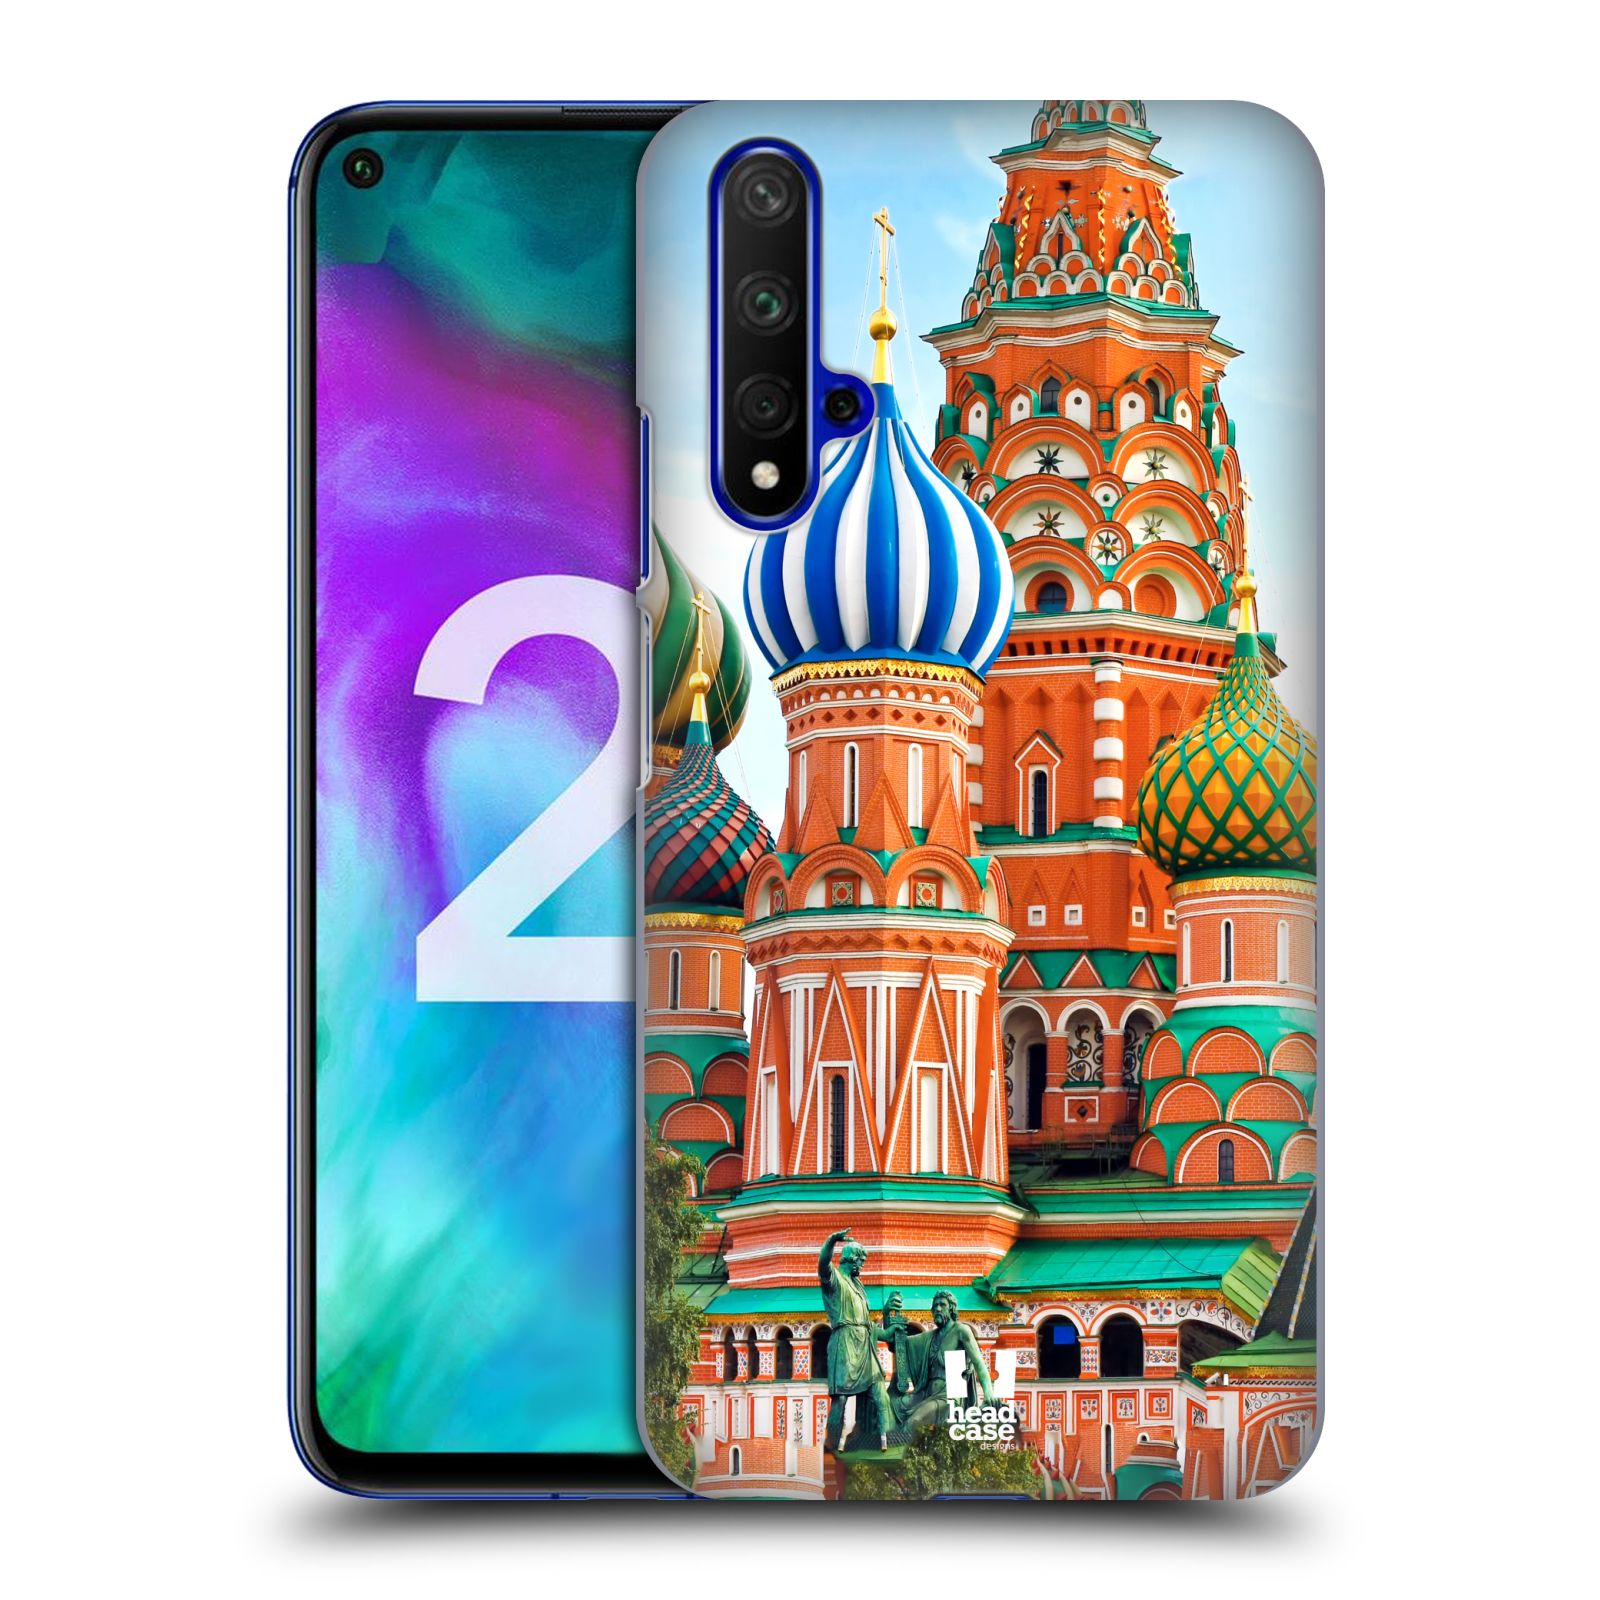 Pouzdro na mobil Honor 20 - HEAD CASE - vzor Města foto náměstí RUSKO,MOSKVA, RUDÉ NÁMĚSTÍ